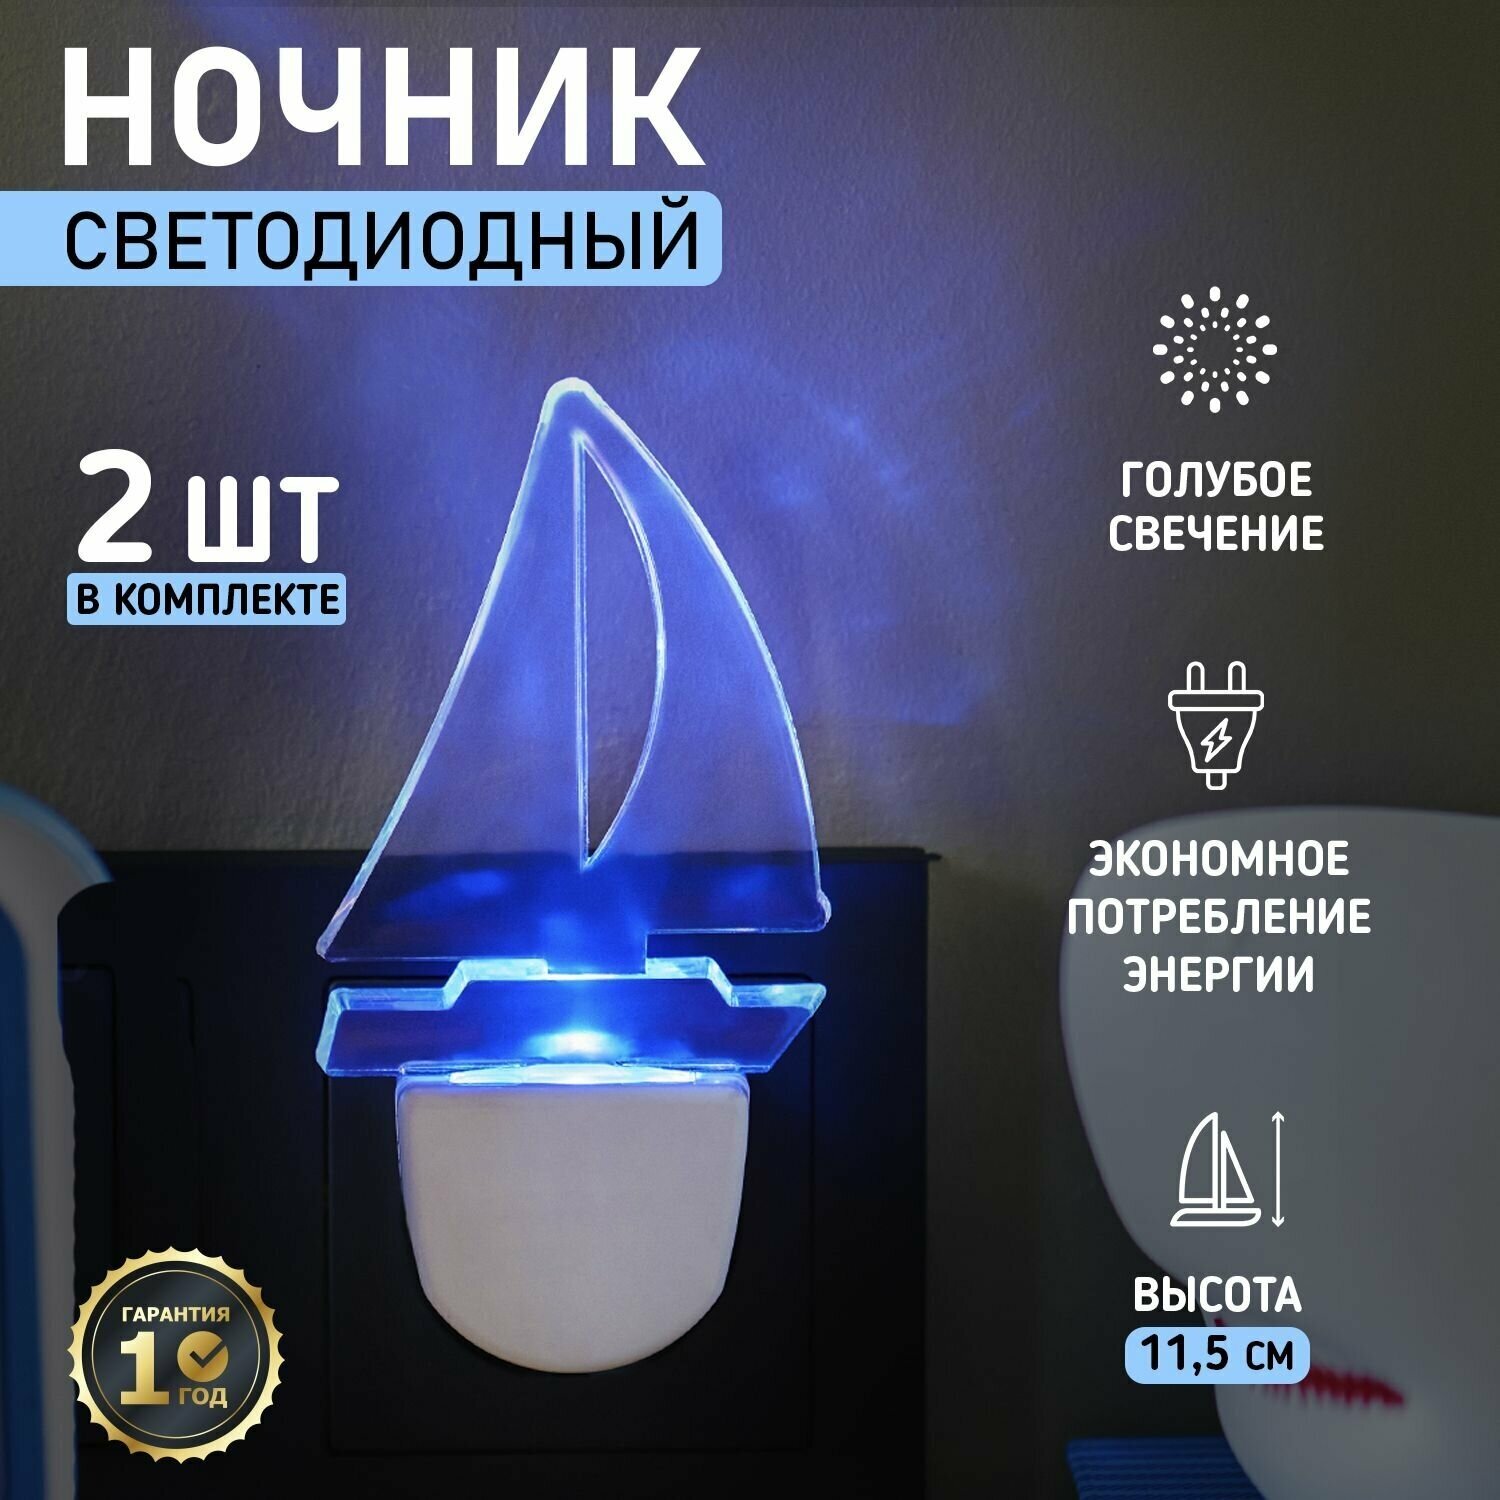 Комплект ночник Rexant Парус Одинокий Синий для комнаты дома дачи офиса голубое свечение, 2 шт